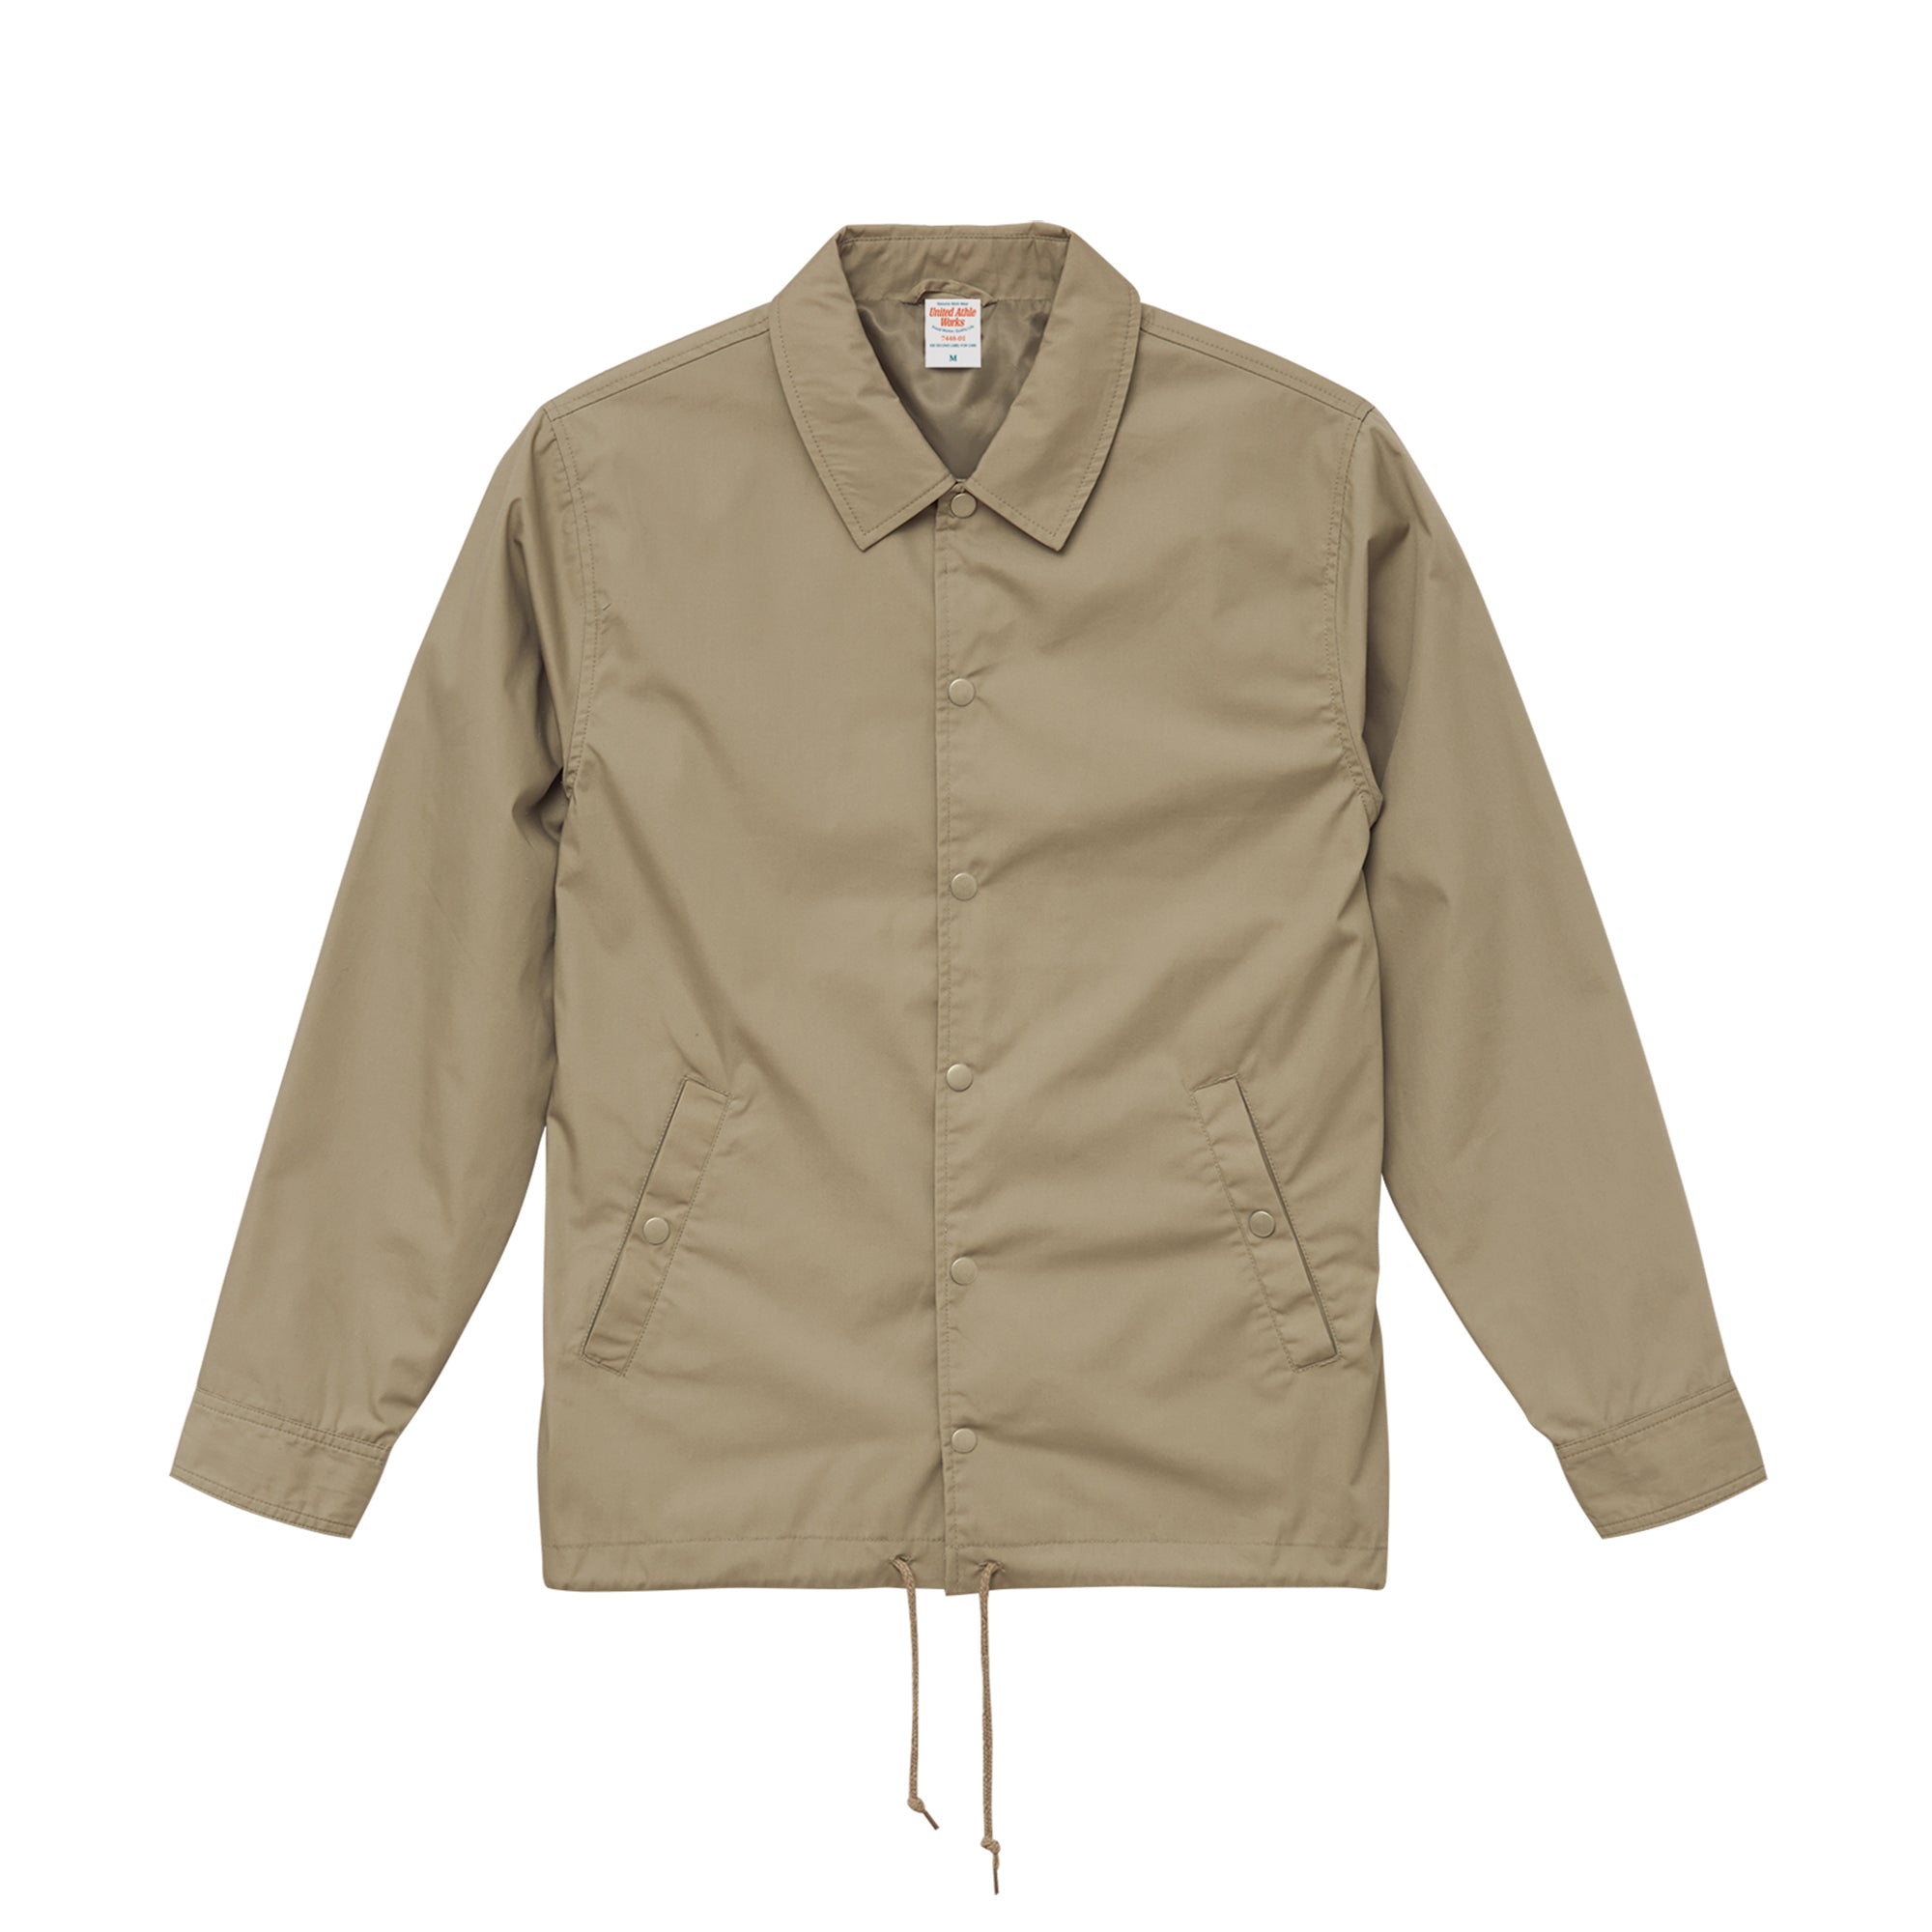 7448 - Lined Coach jacket (water repellent) - Beige x 1